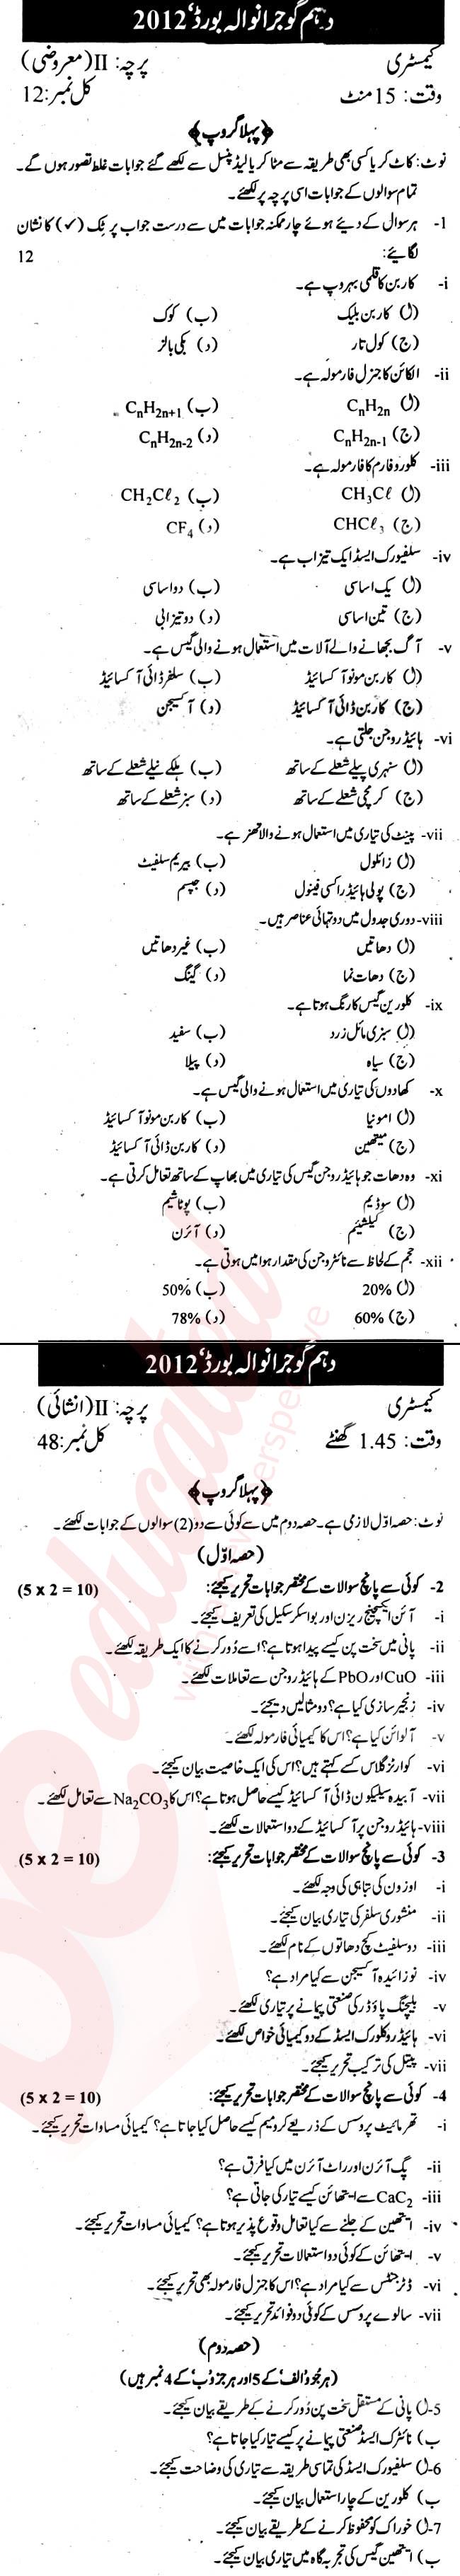 Chemistry 10th Urdu Medium Past Paper Group 1 BISE Gujranwala 2012